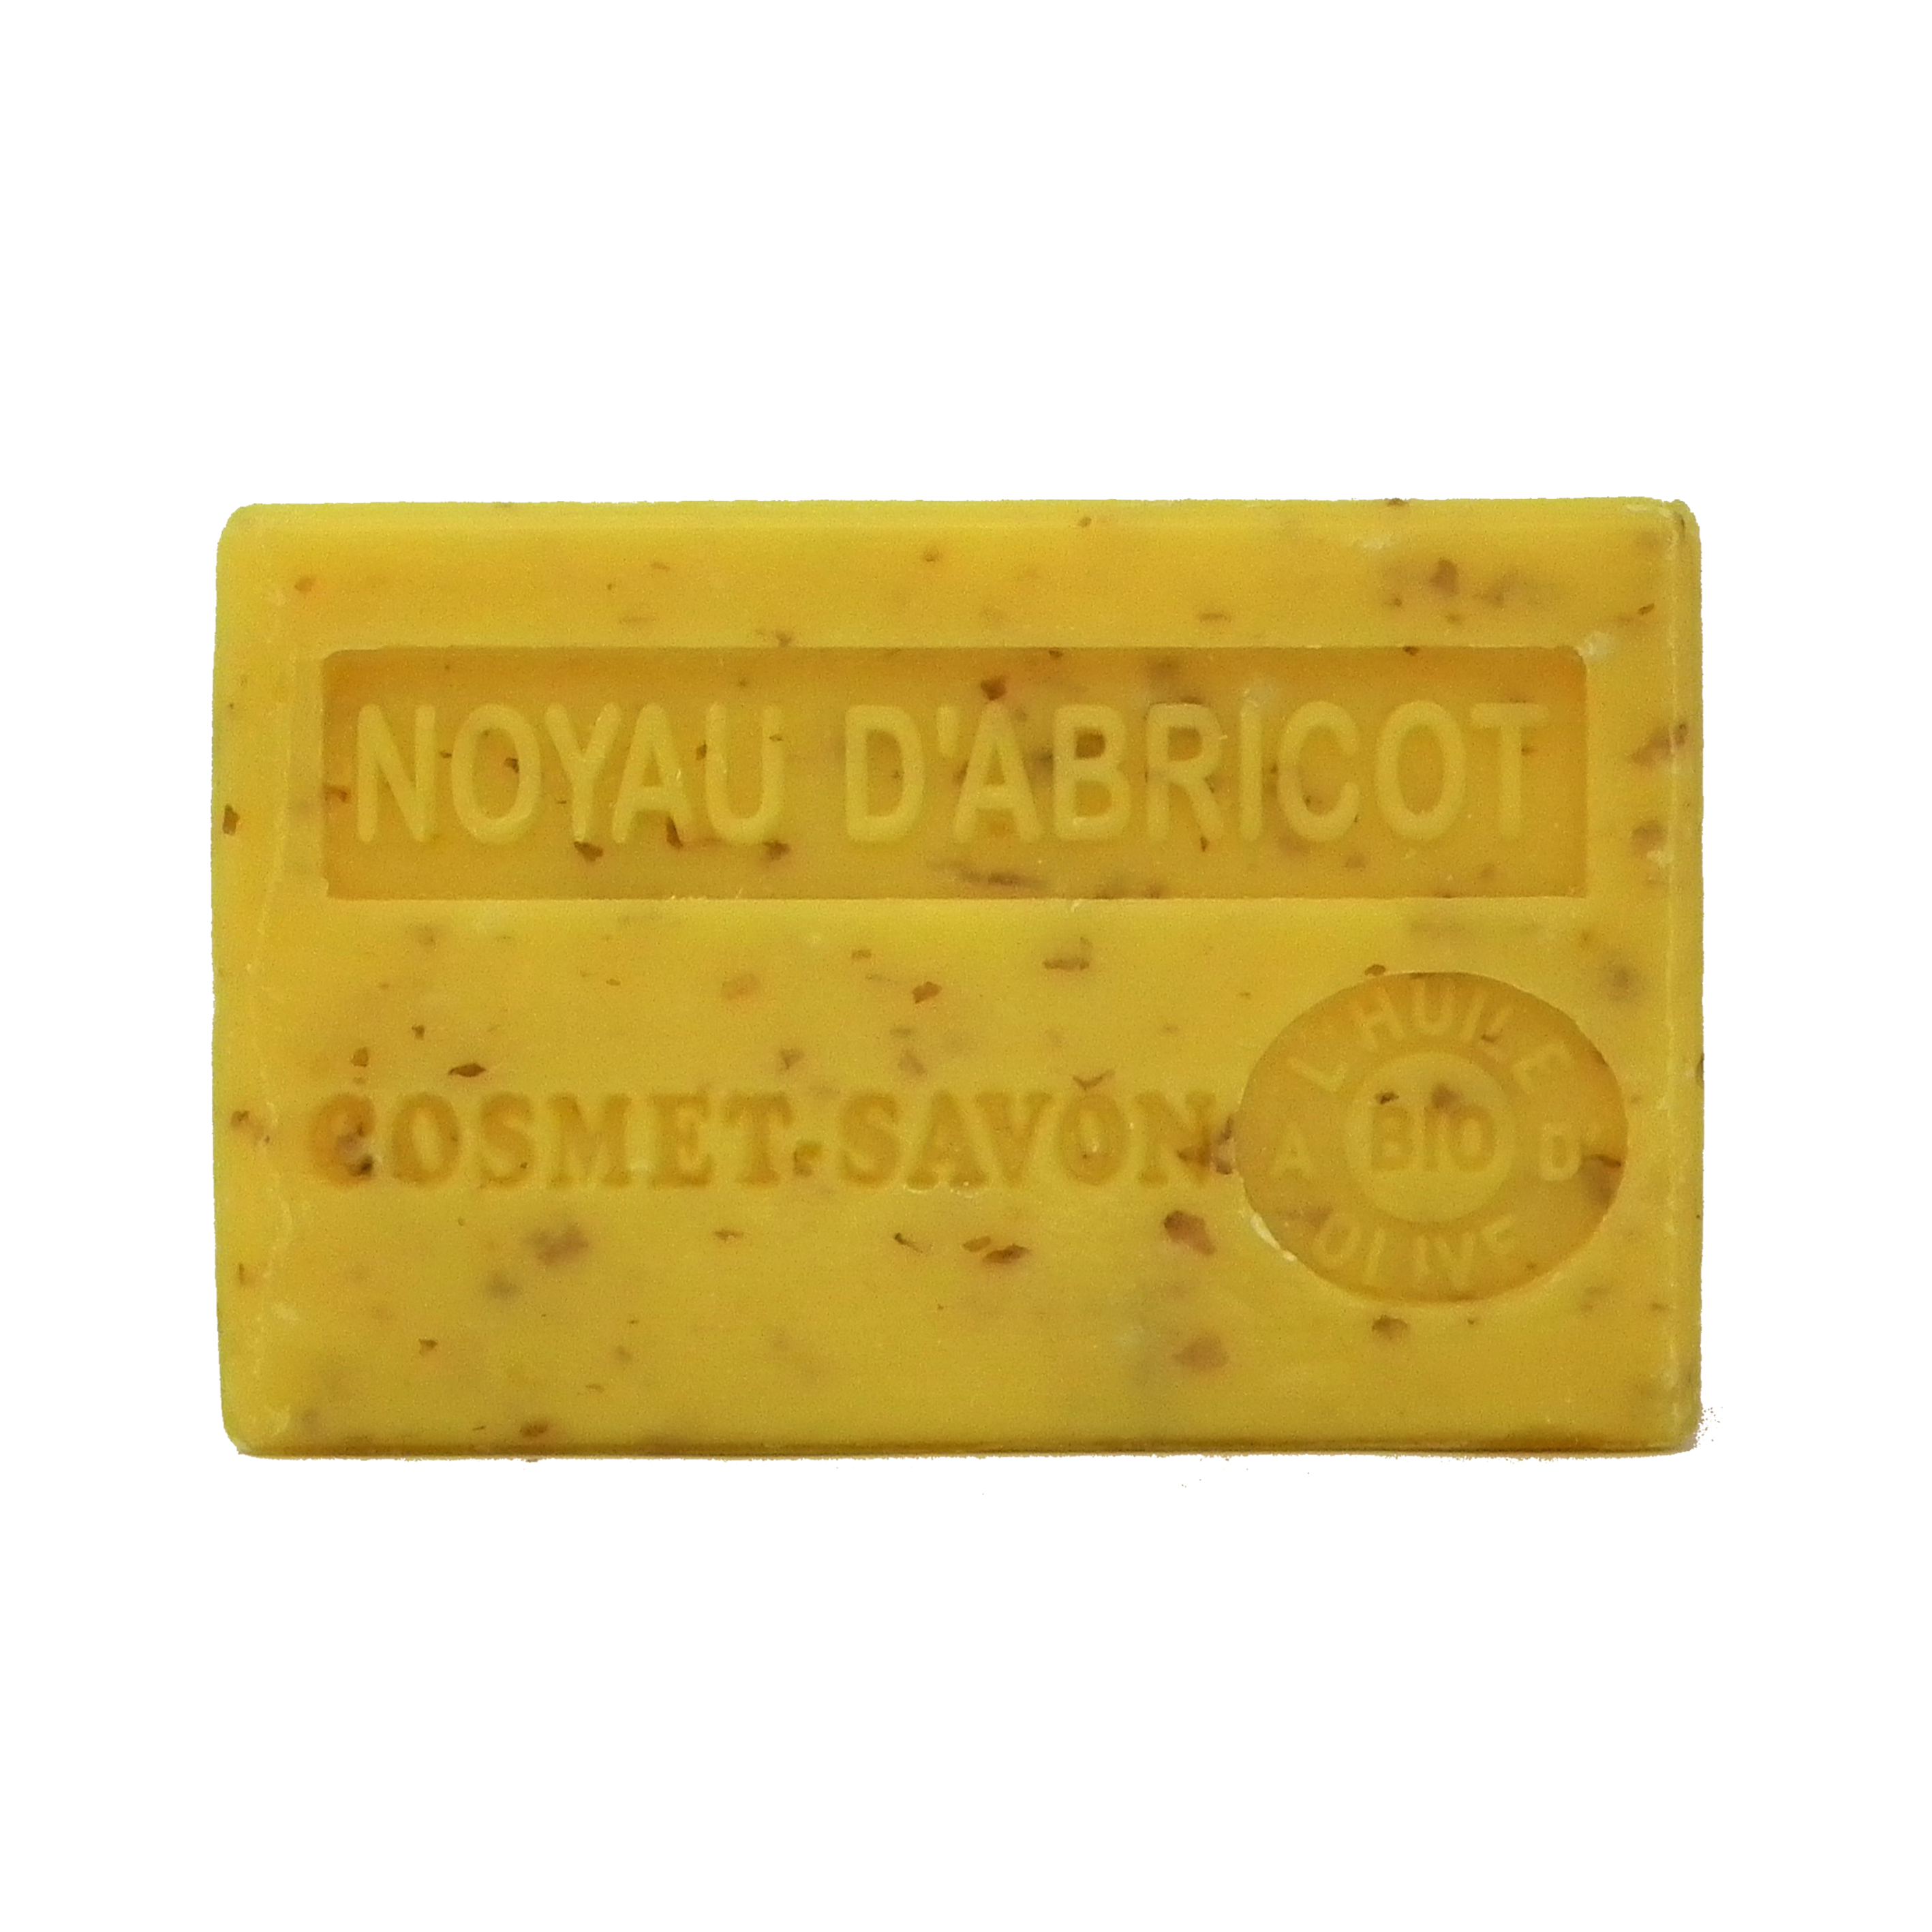 noyau-dabricot-broye-exfoliant-savon-125gr-au-beurre-de-karite-bio-cosmet-savon-3655205006003-face-JPEG